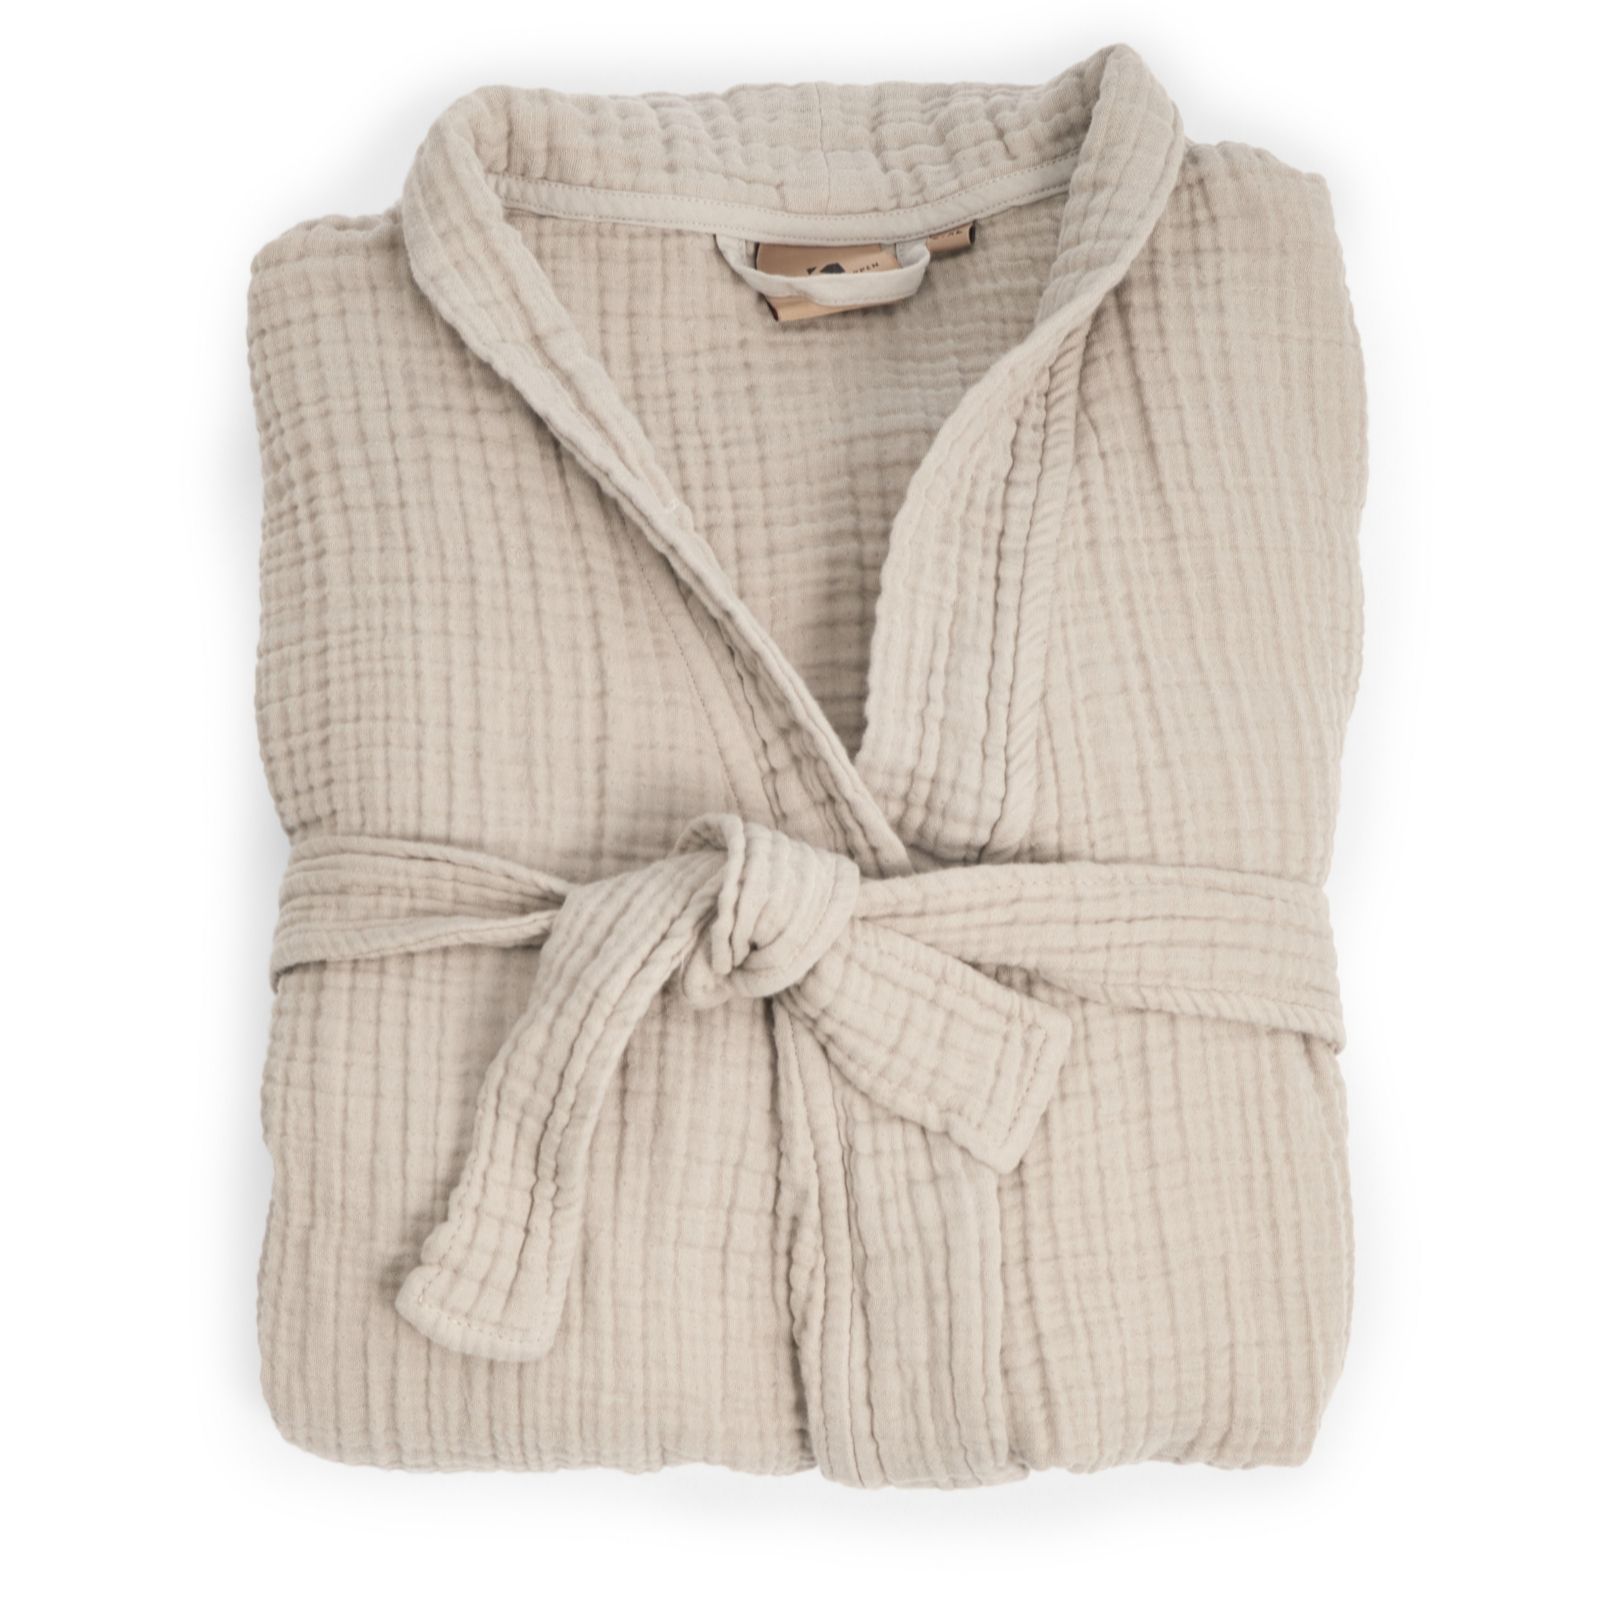 K by Kelly Hoppen 100% Cotton Muslin Robe - QVC UK